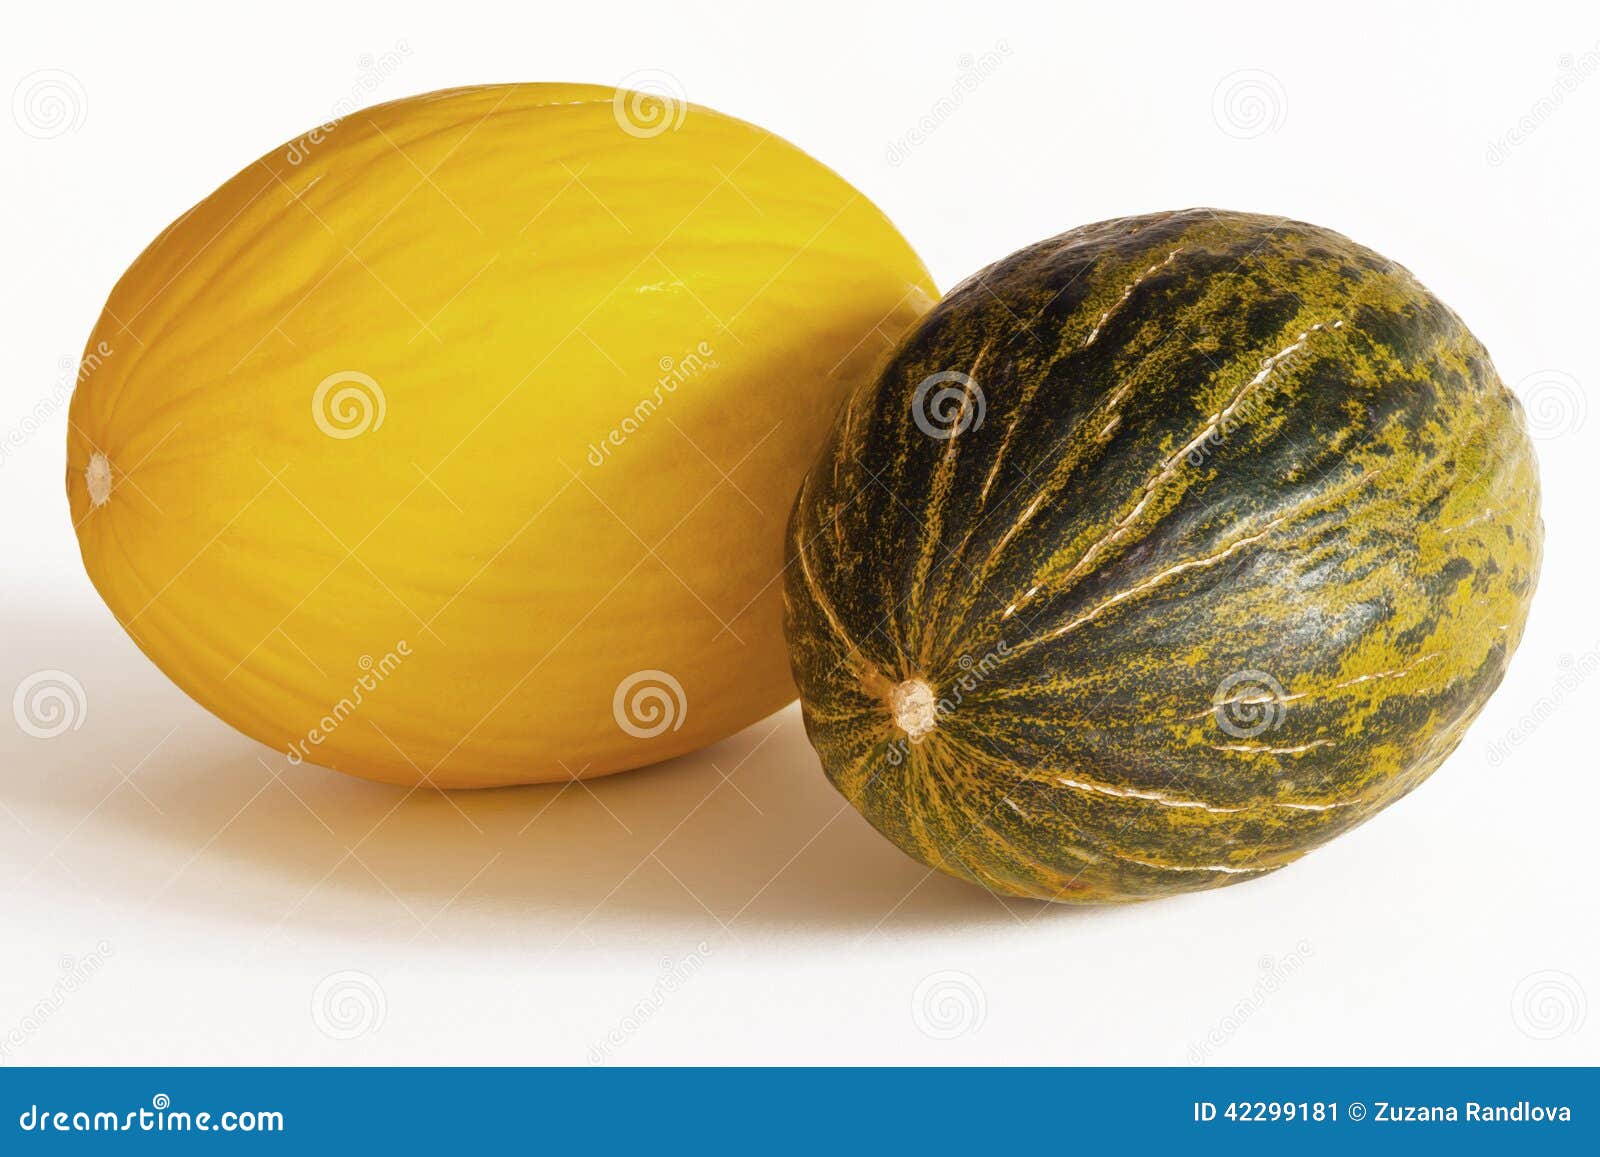 melon - canary and piel de sapo